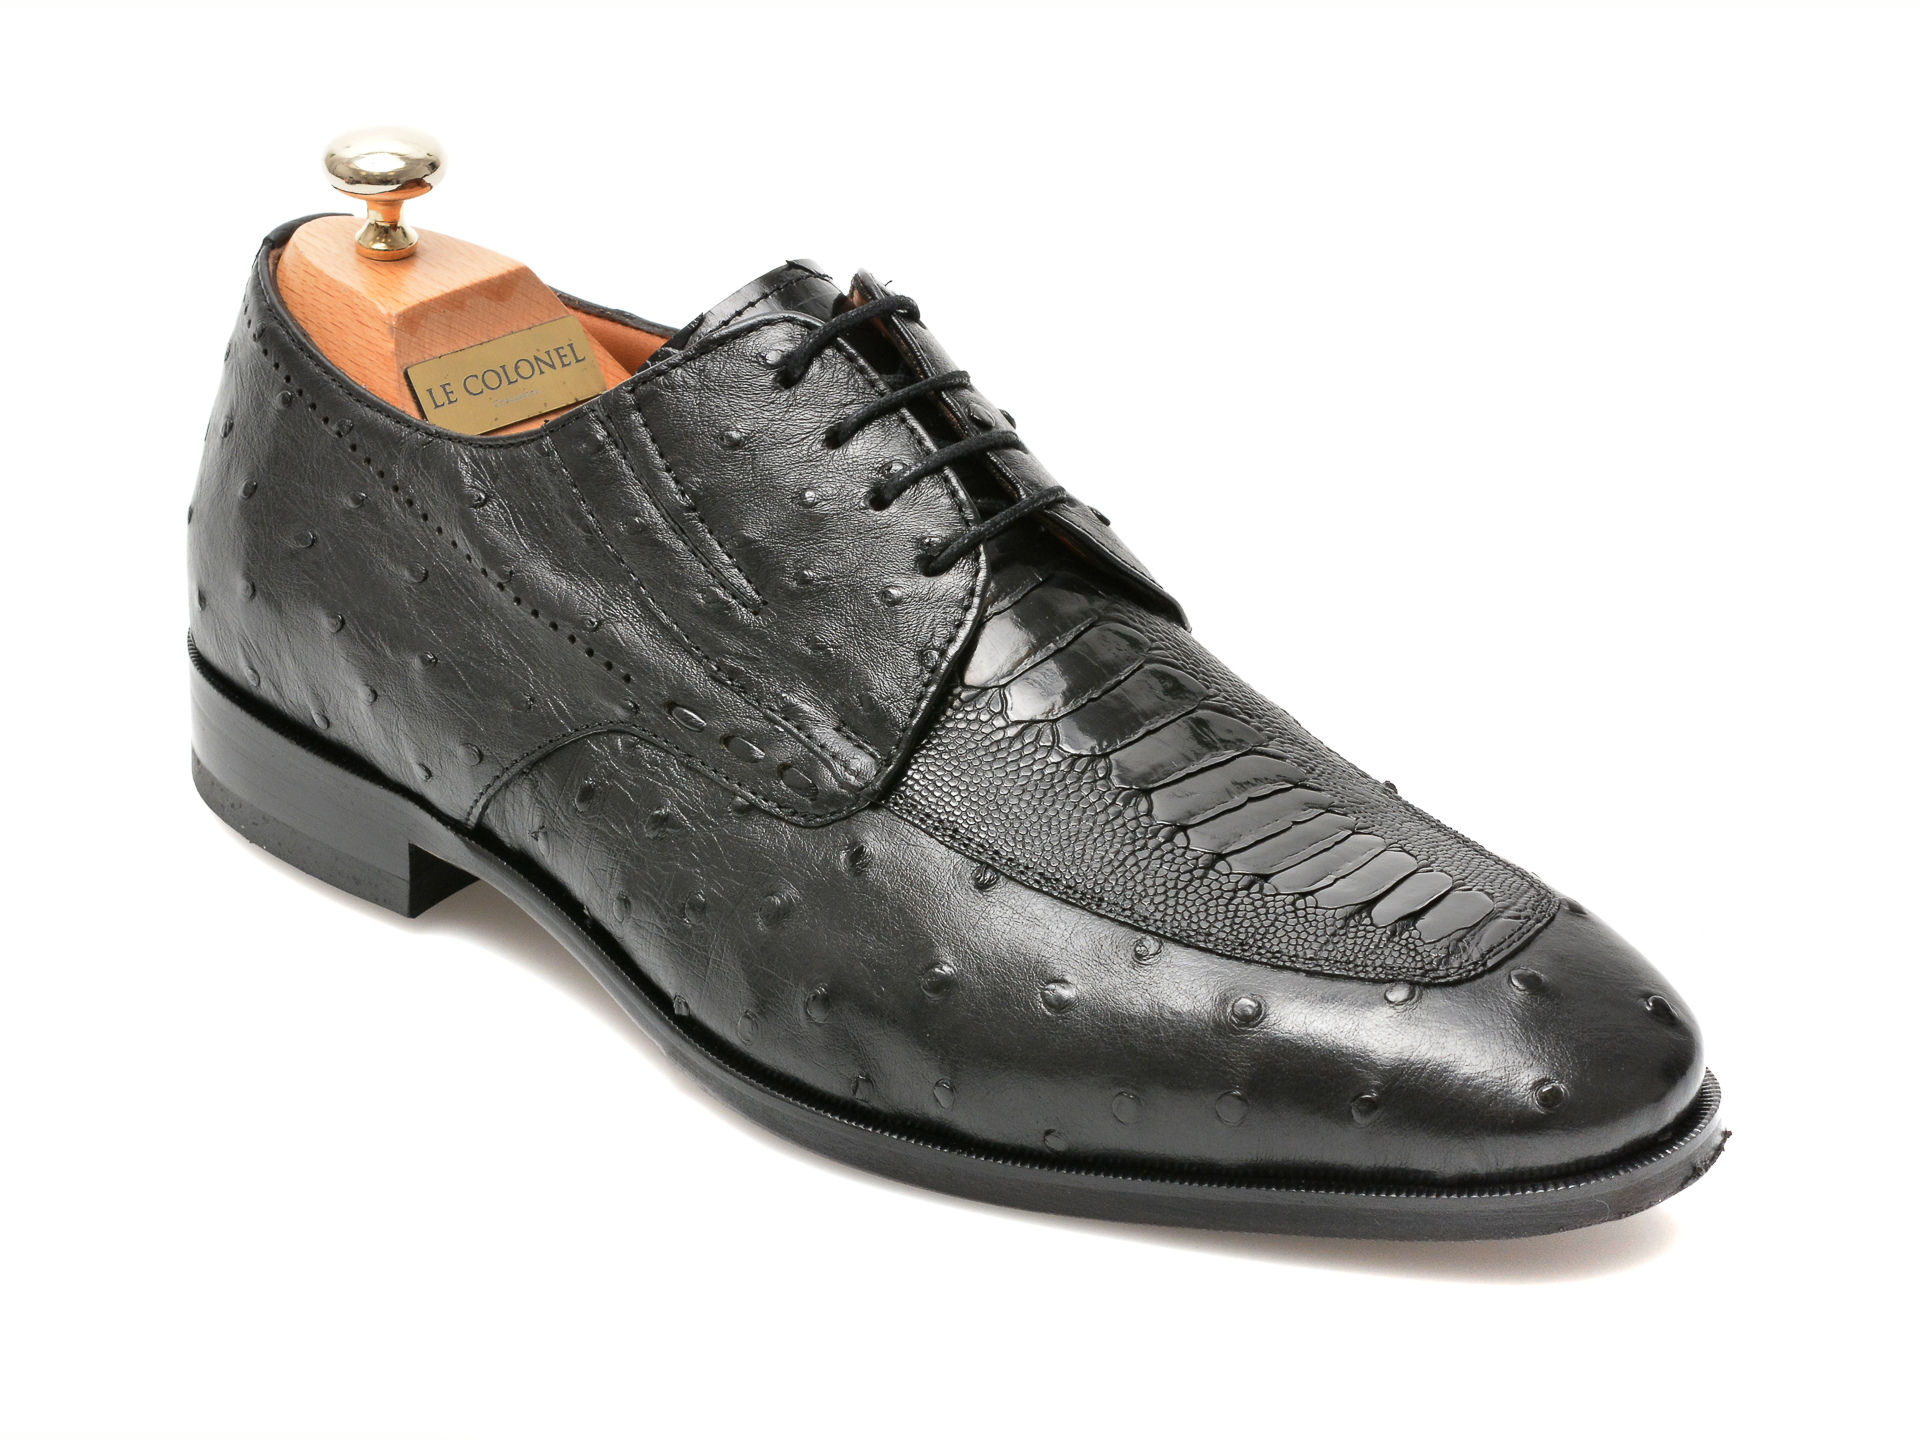 Pantofi LE COLONEL negri, 48701, din piele naturala Le Colonel